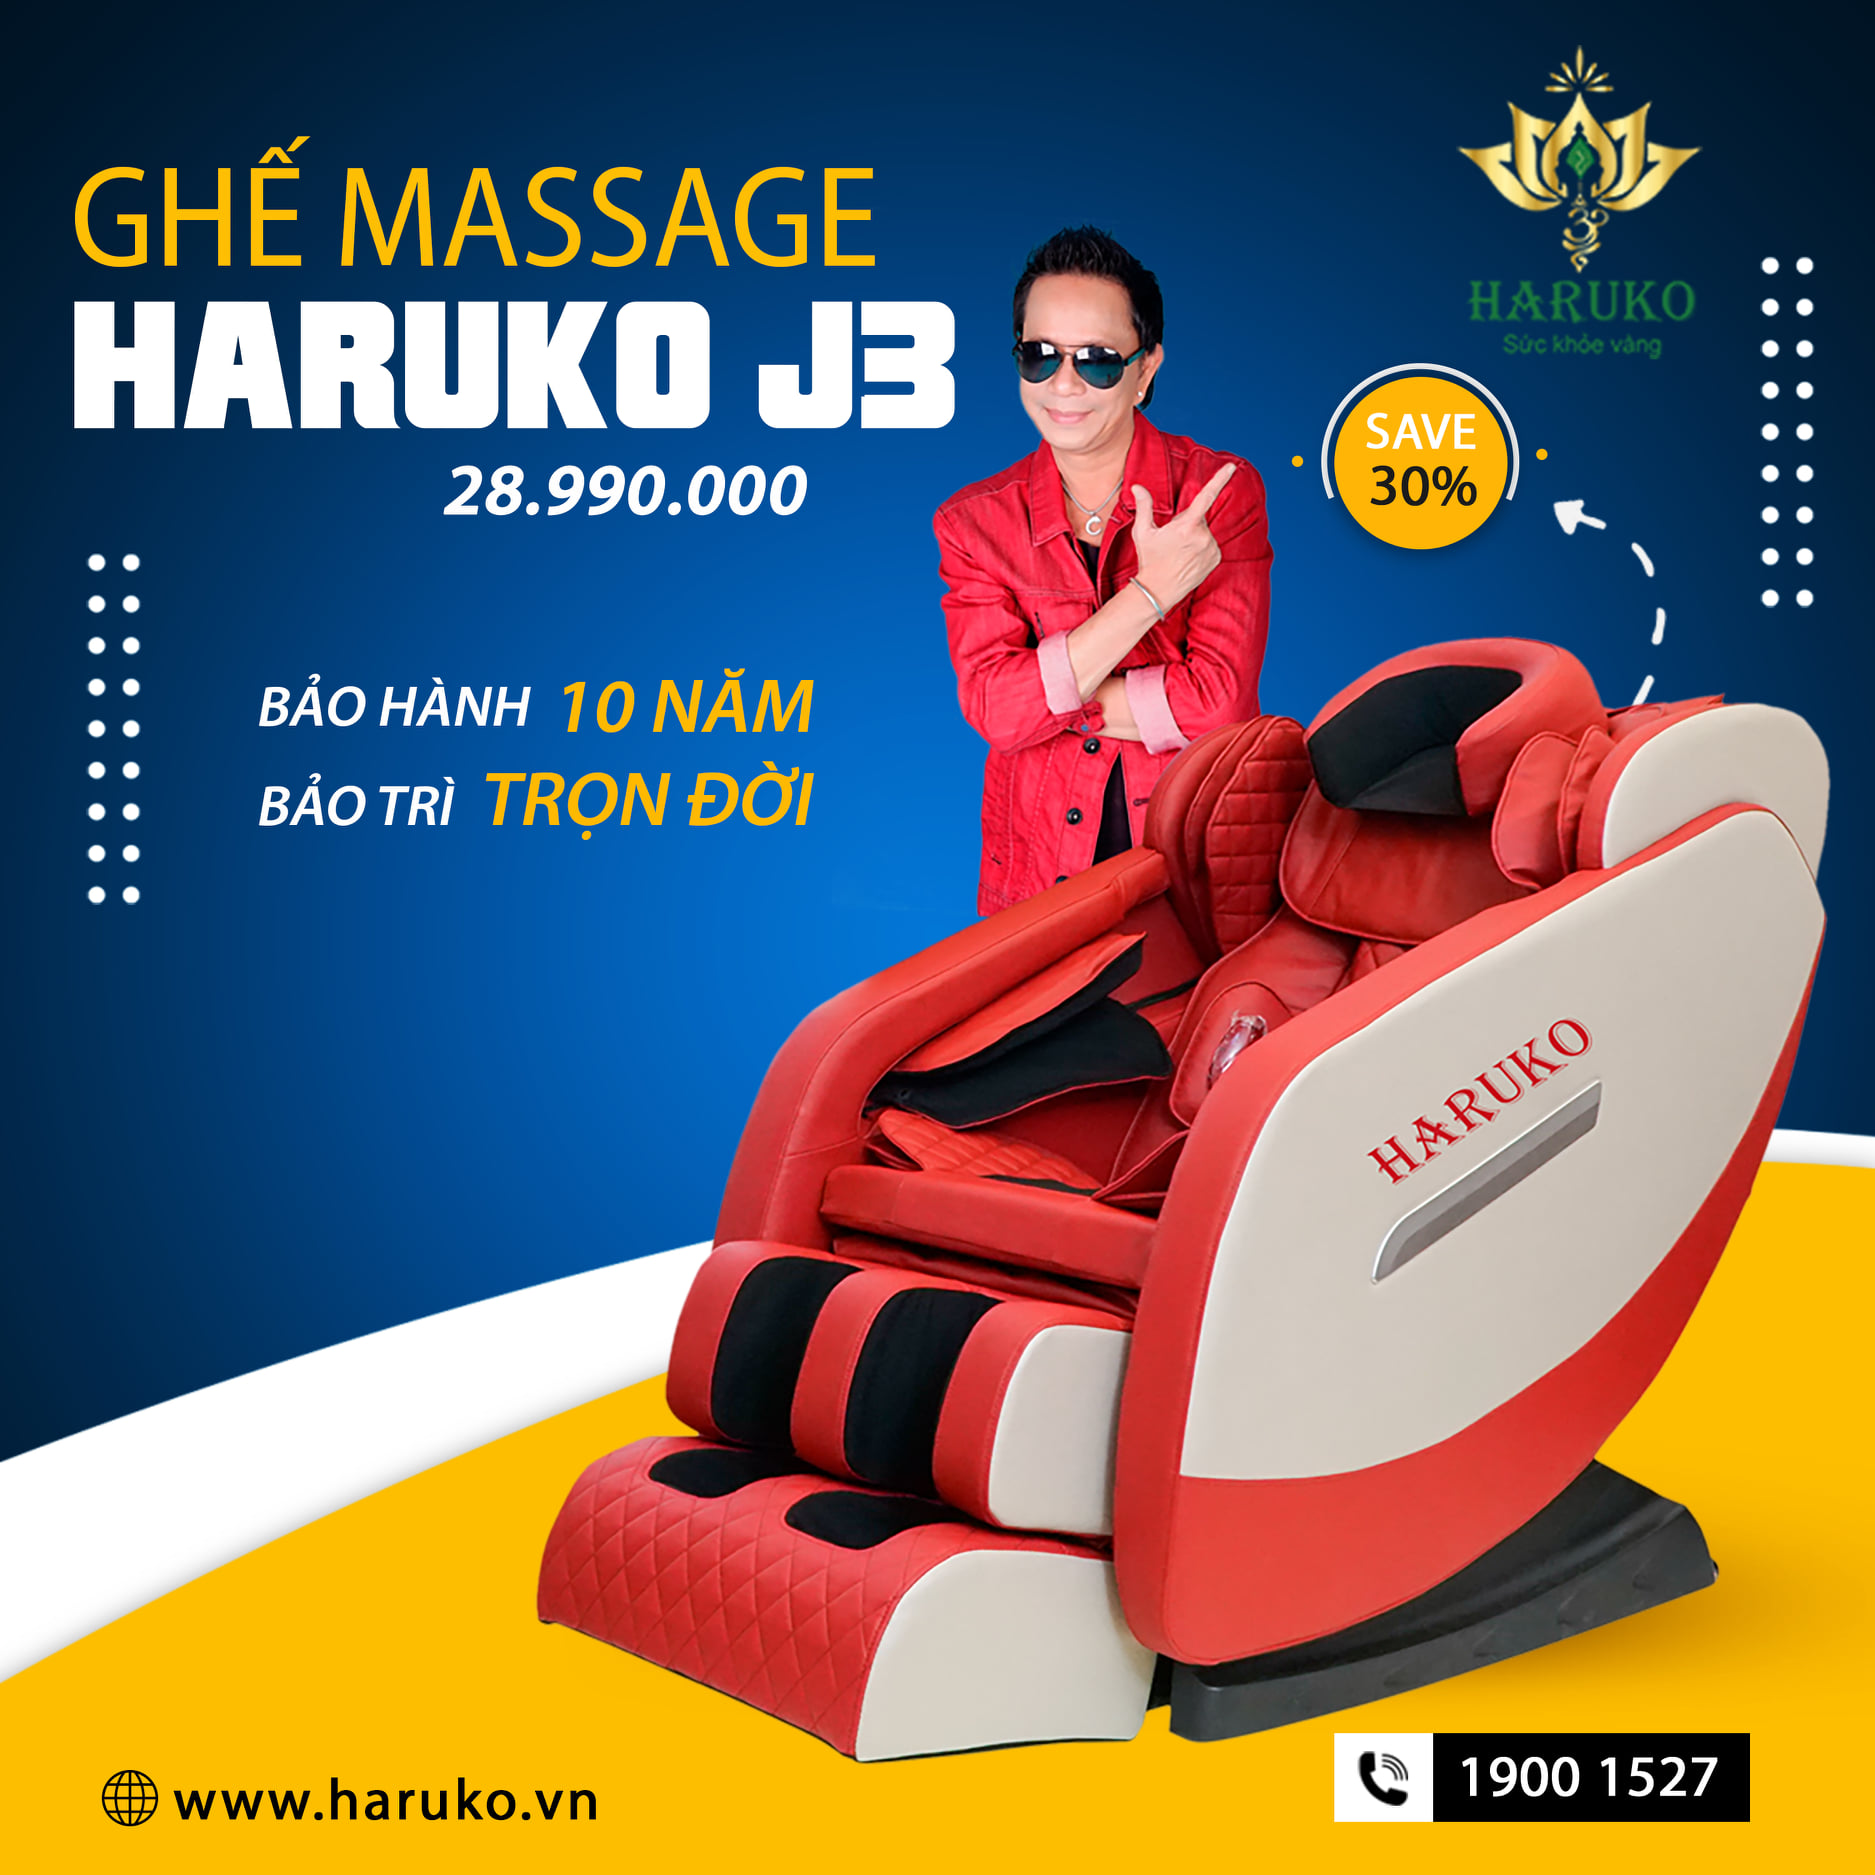 Haruko-J3 là sản phẩm ghế massage nổi bật trong phân khúc tầm trung với nhiều tính năng hiện đại và hệ thông con lăn mới nhất